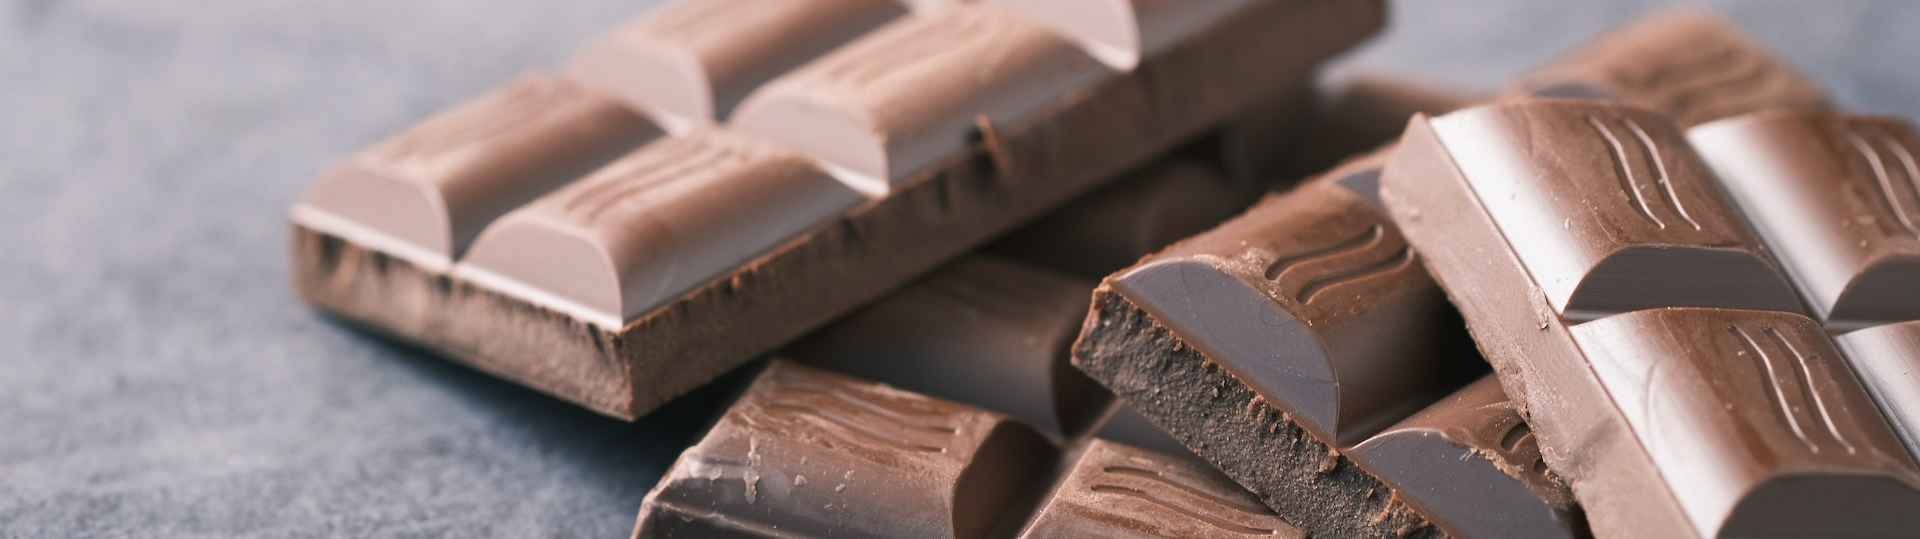 Buenas noticias: comer chocolate es bueno